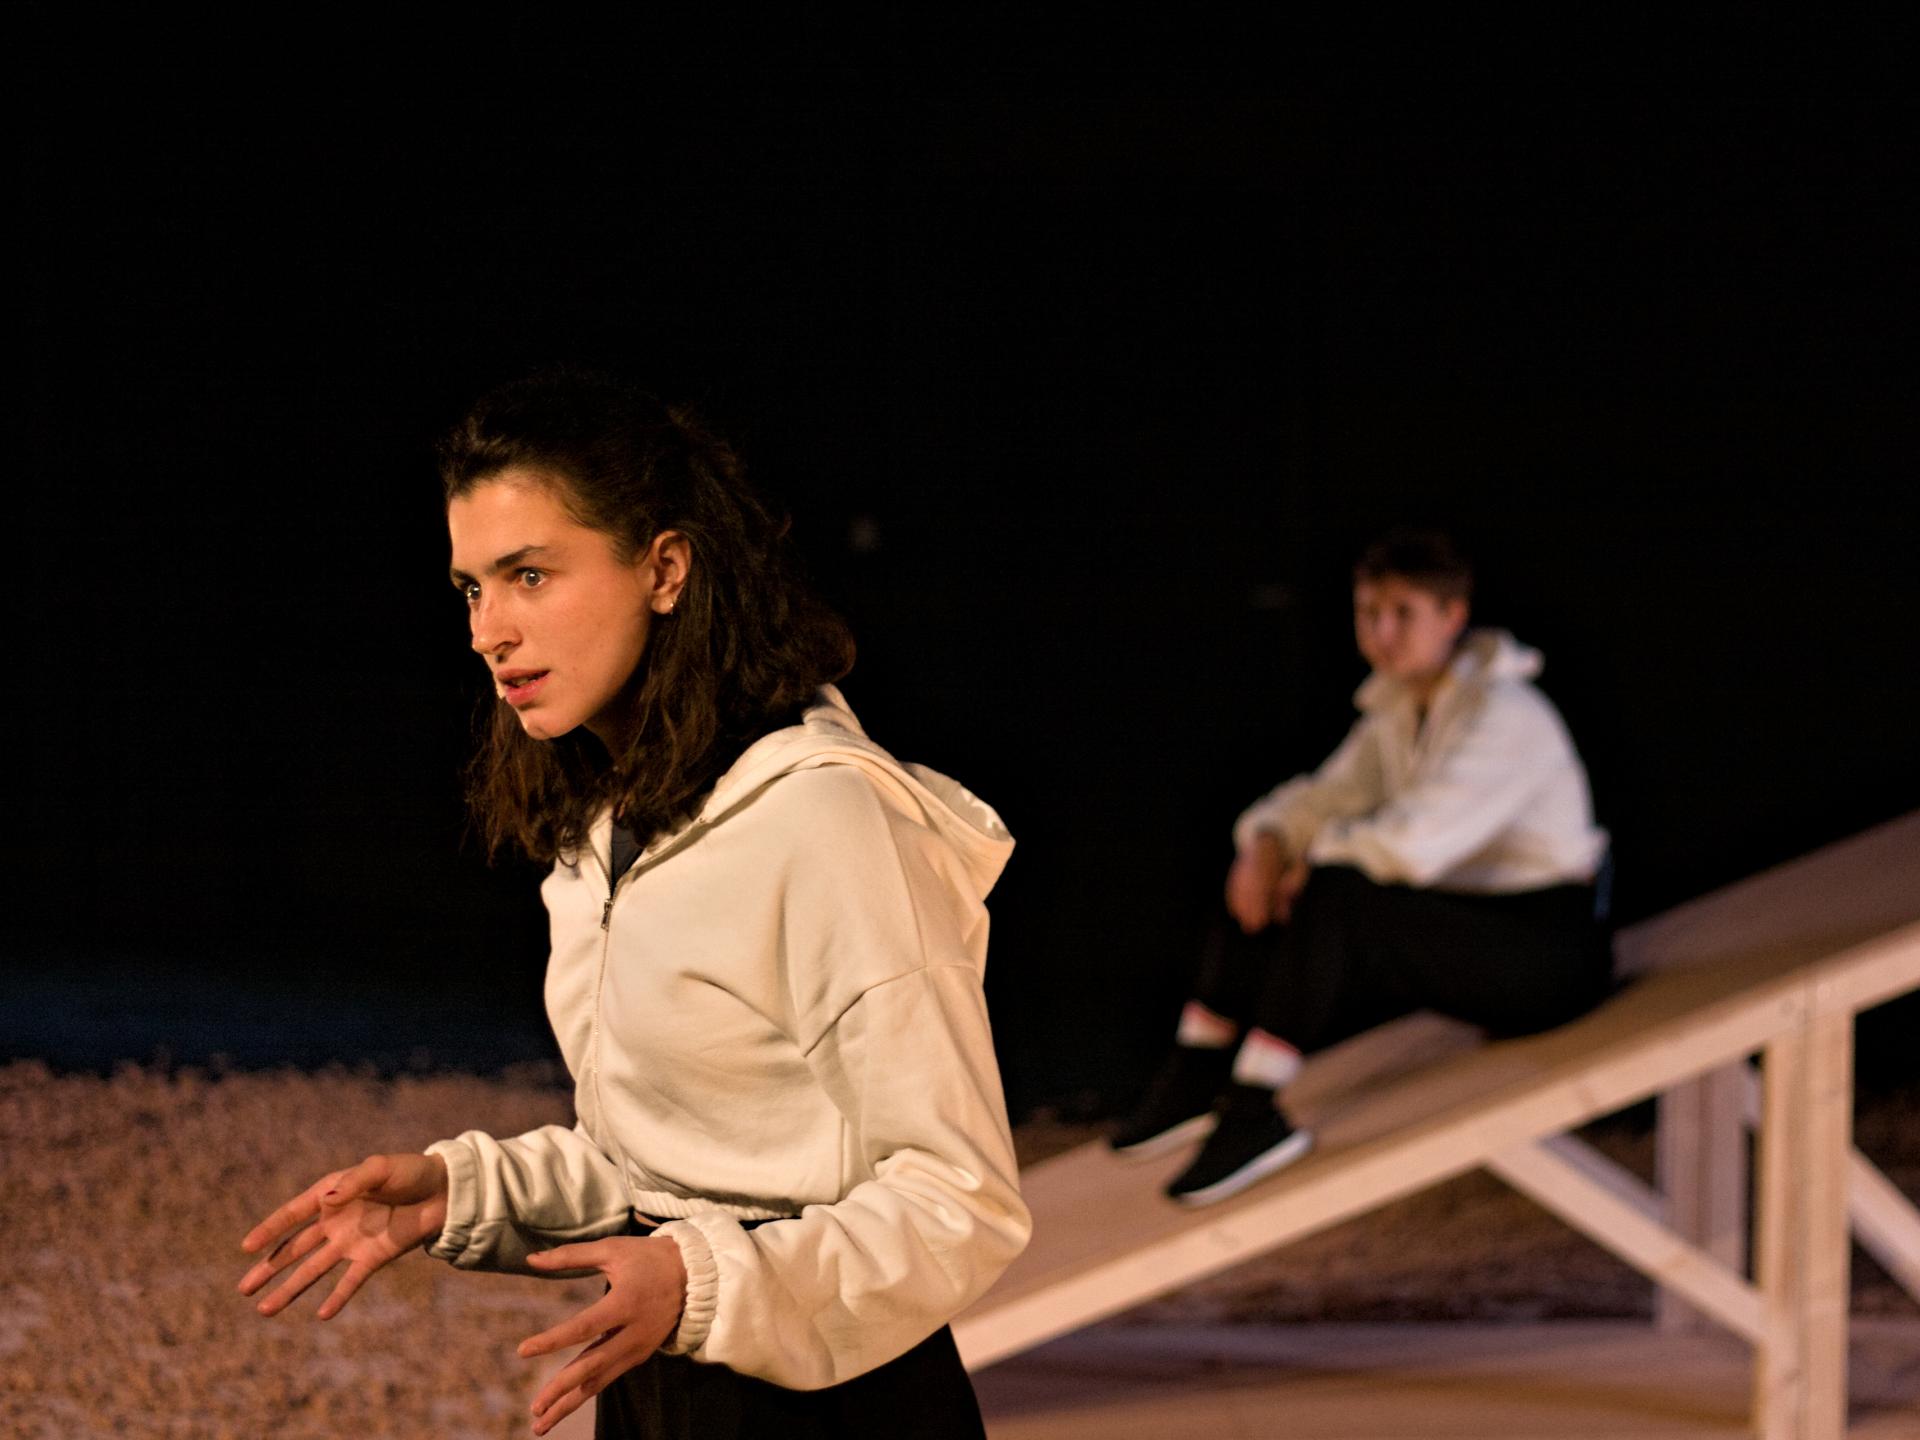 Eine Frau im Vordergrund steht mit beiden Händen vor dem Körper und spricht, im Hintergrund sitzt eine zweite Frau auf einer Holzschräge.